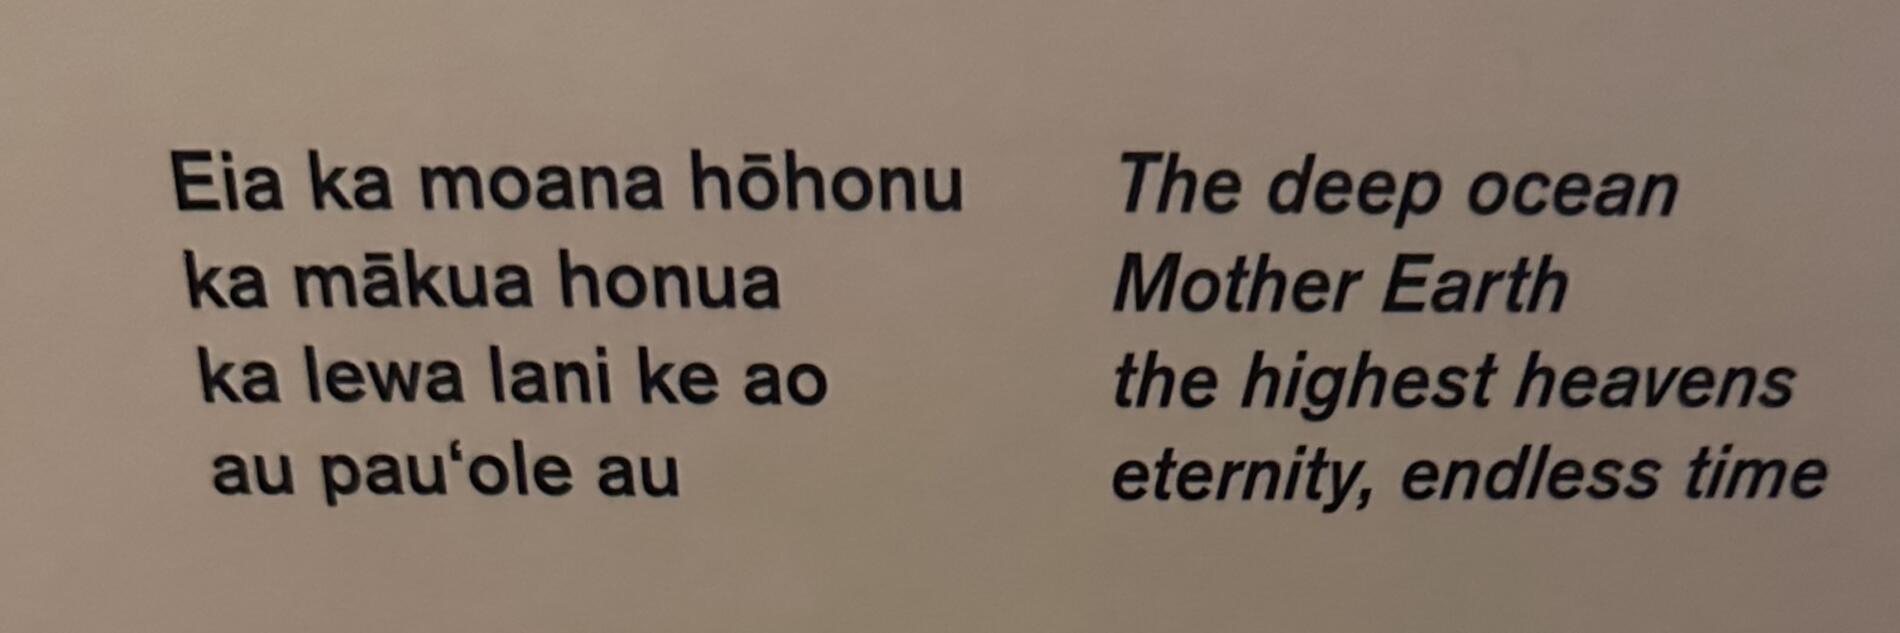 Hawaiian poem